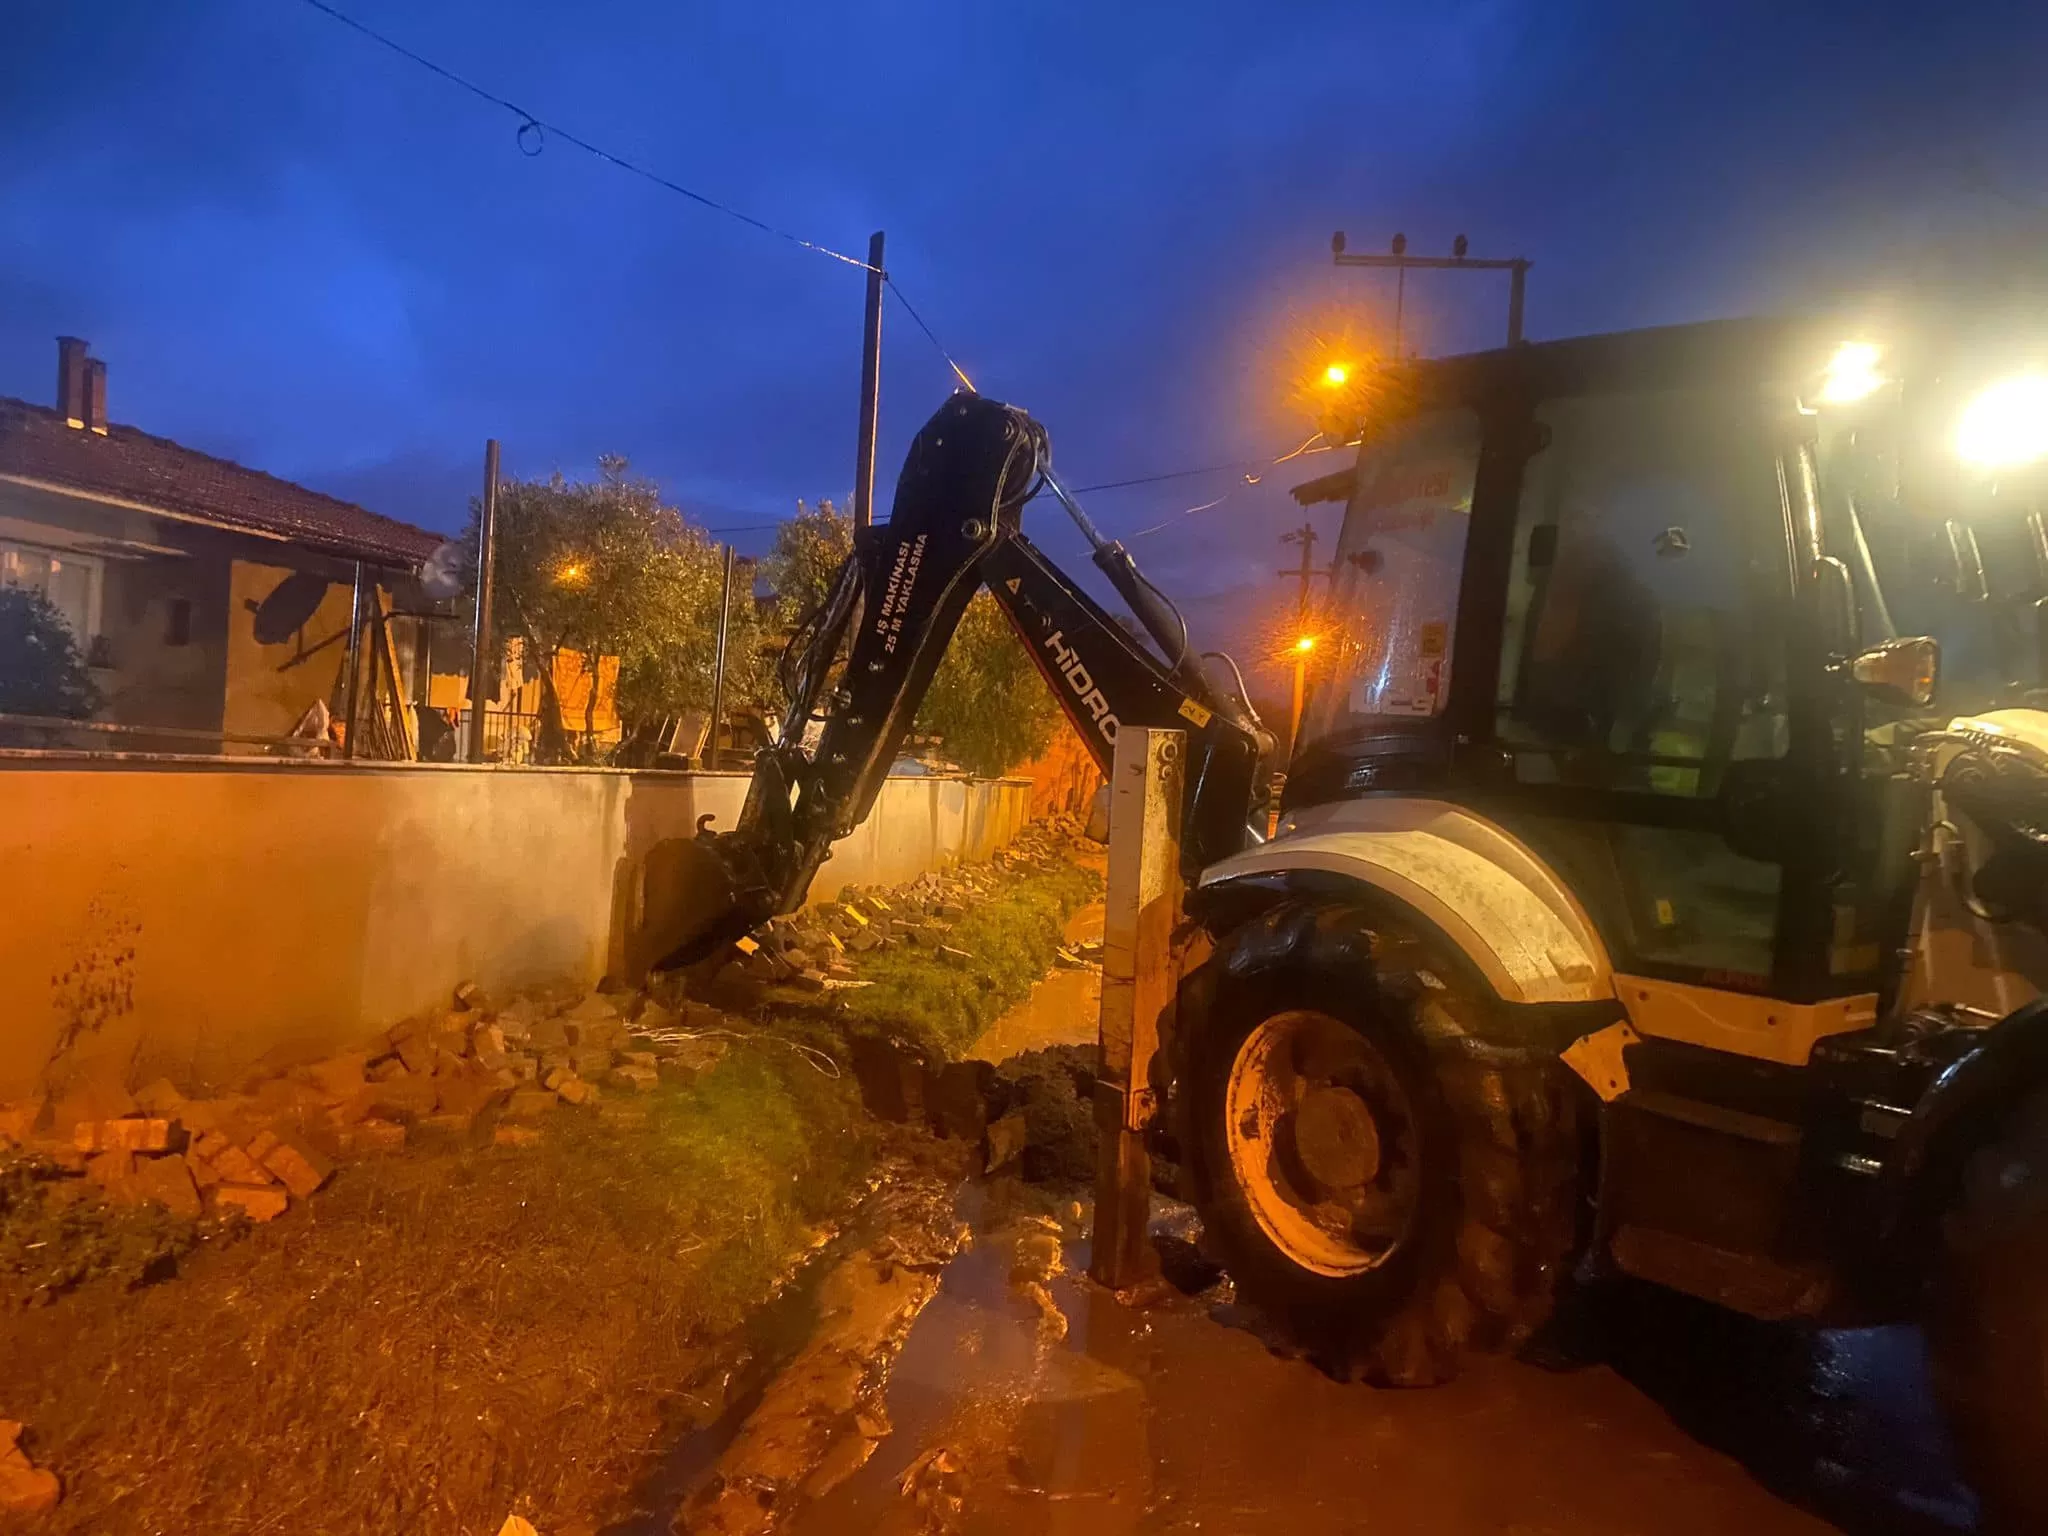 İzmir'in Kiraz ilçesinde etkili olan yağış sonrası, belediye ekipleri aralıksız olarak çalışmalarını sürdürüyor.